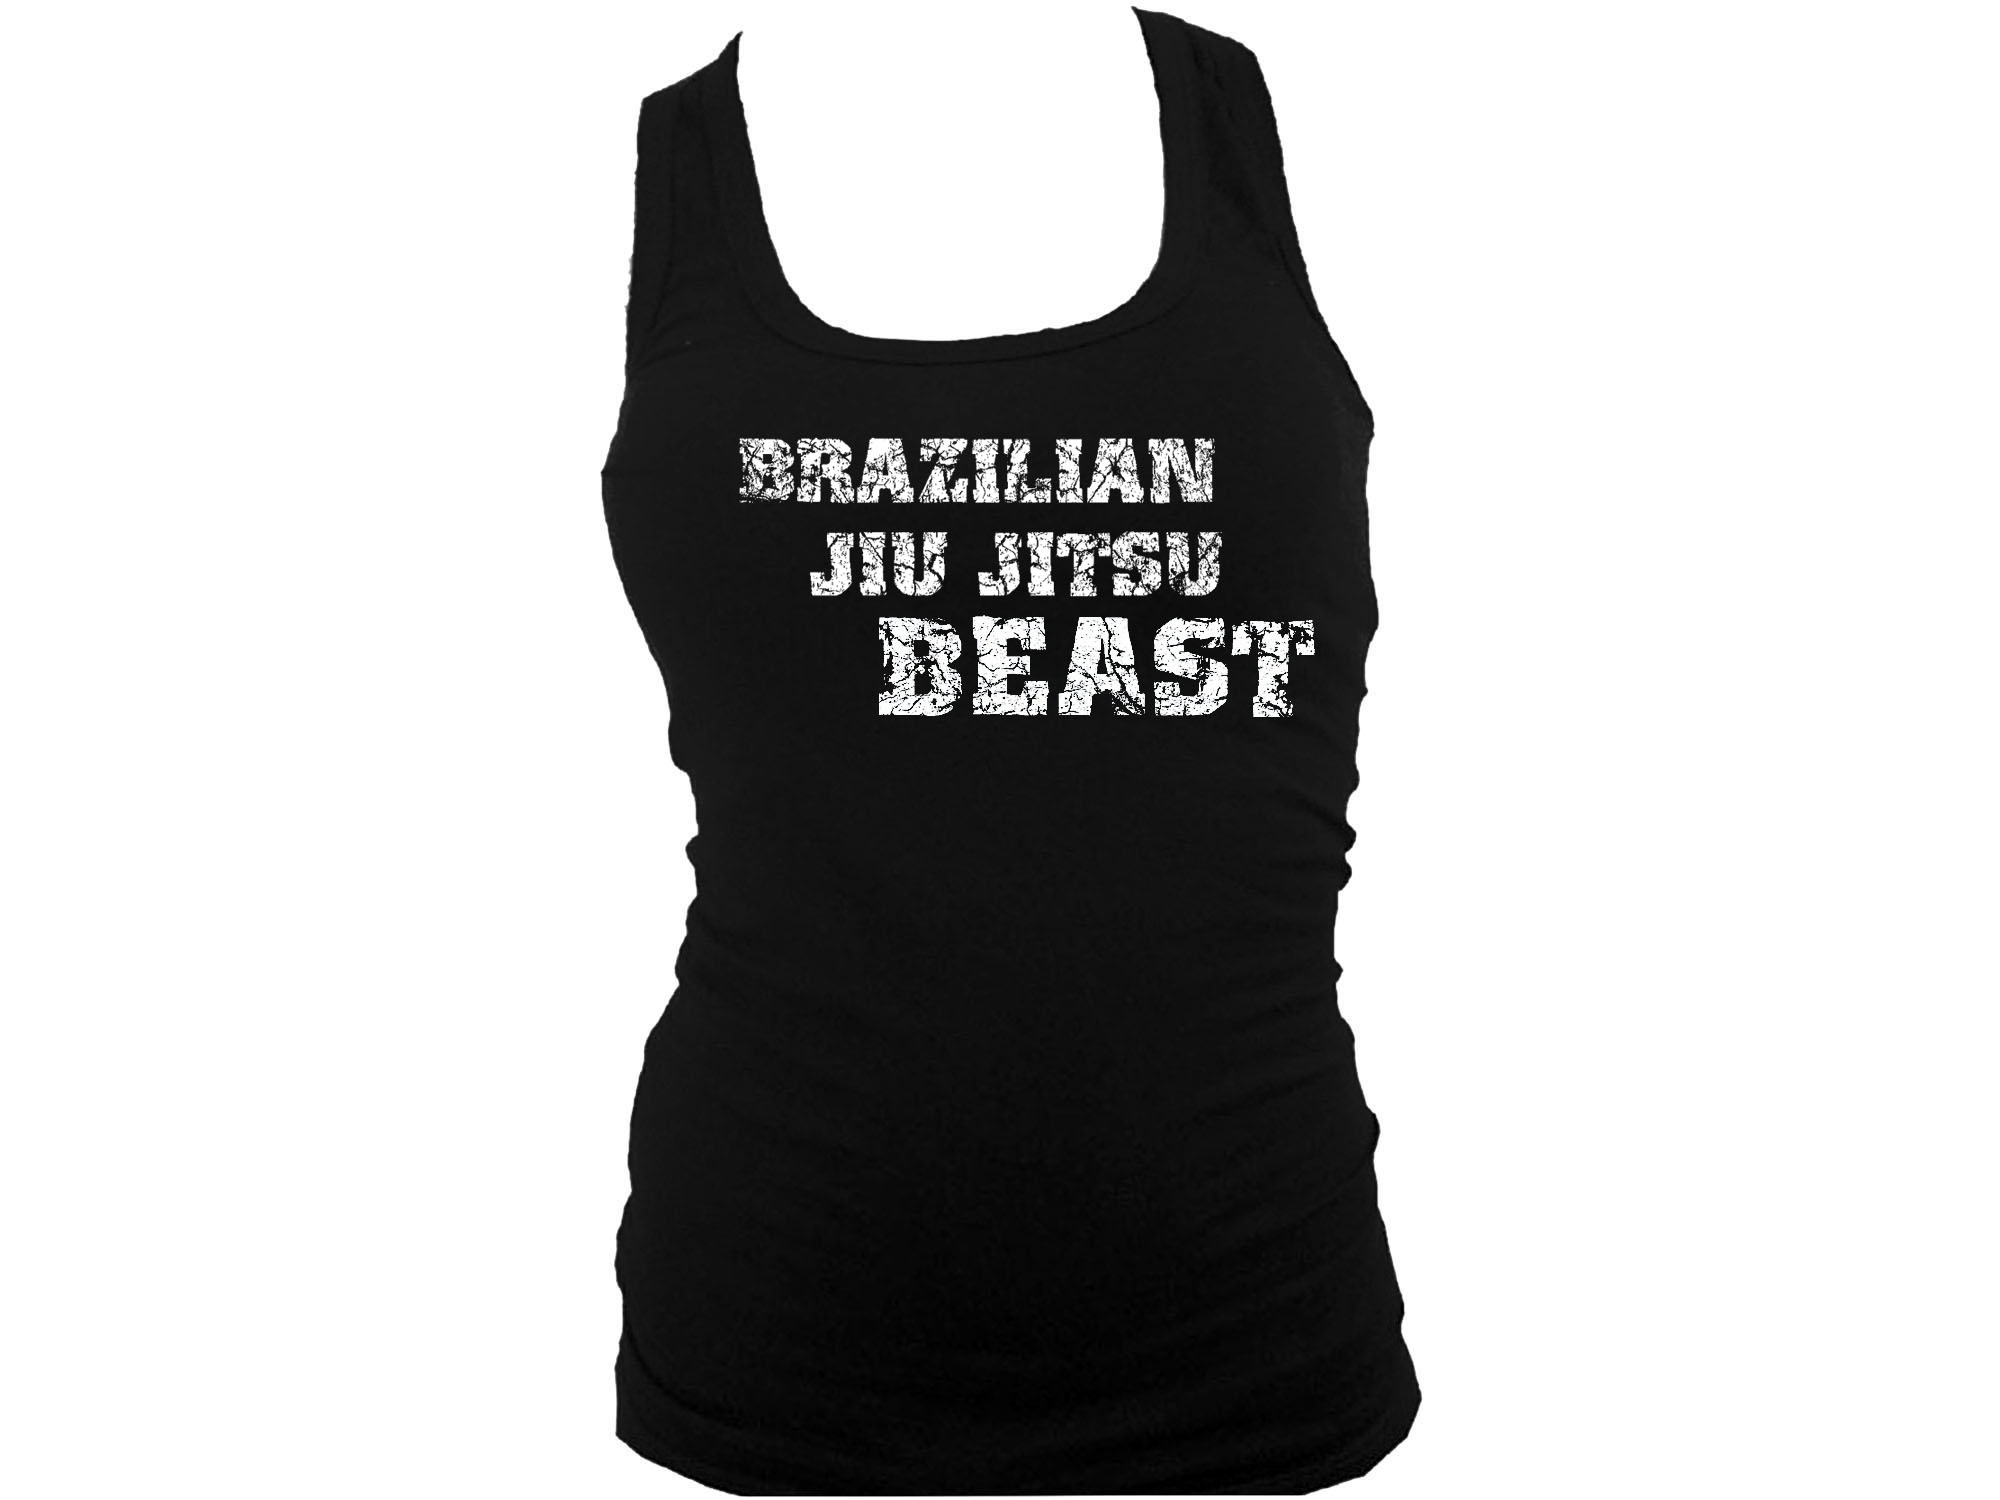 Brazilian jiu jitsu beast women racerback tank top S/M